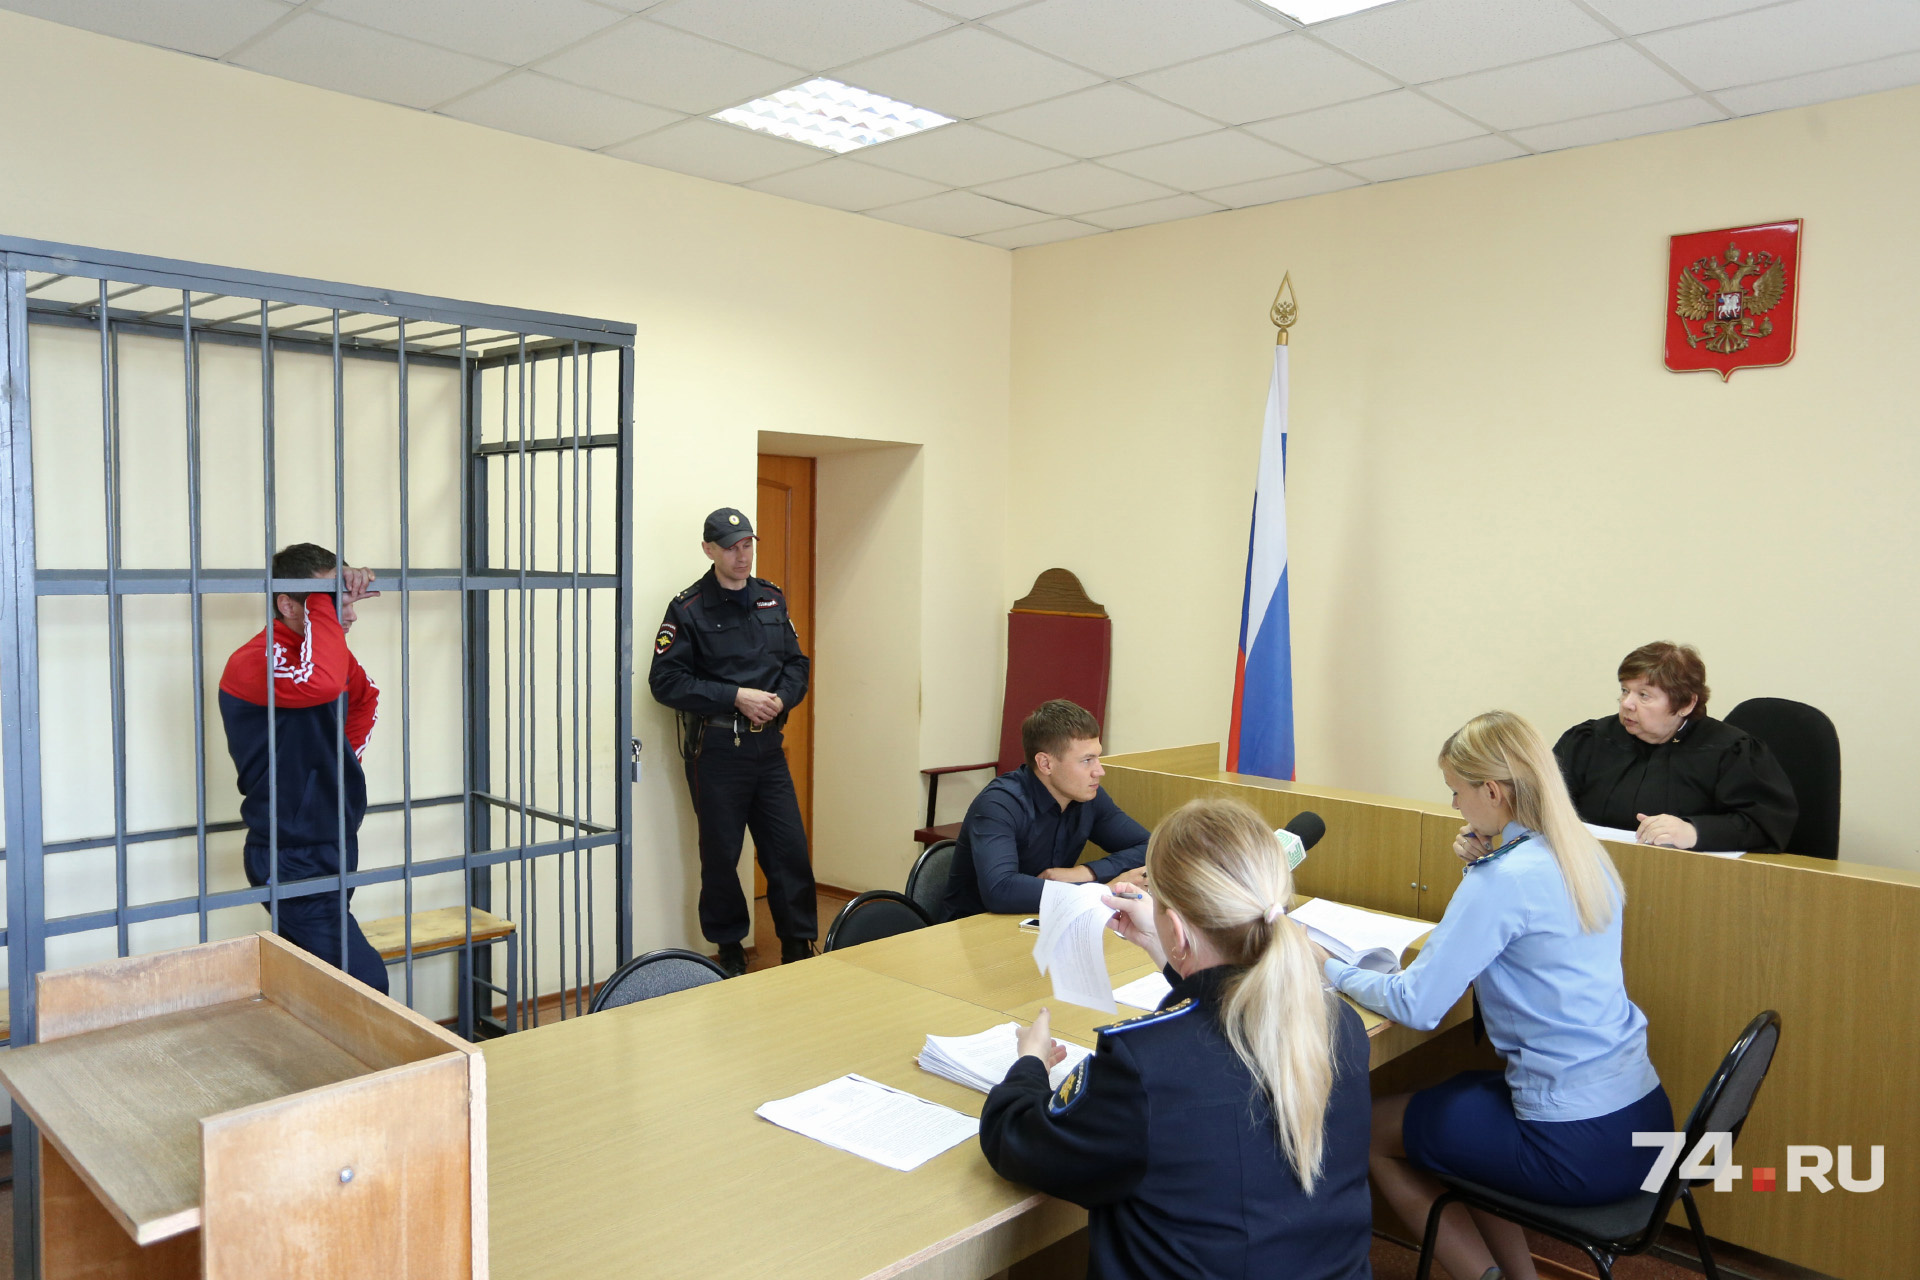 Николаева защищал нанятый адвокат из Южноуральска